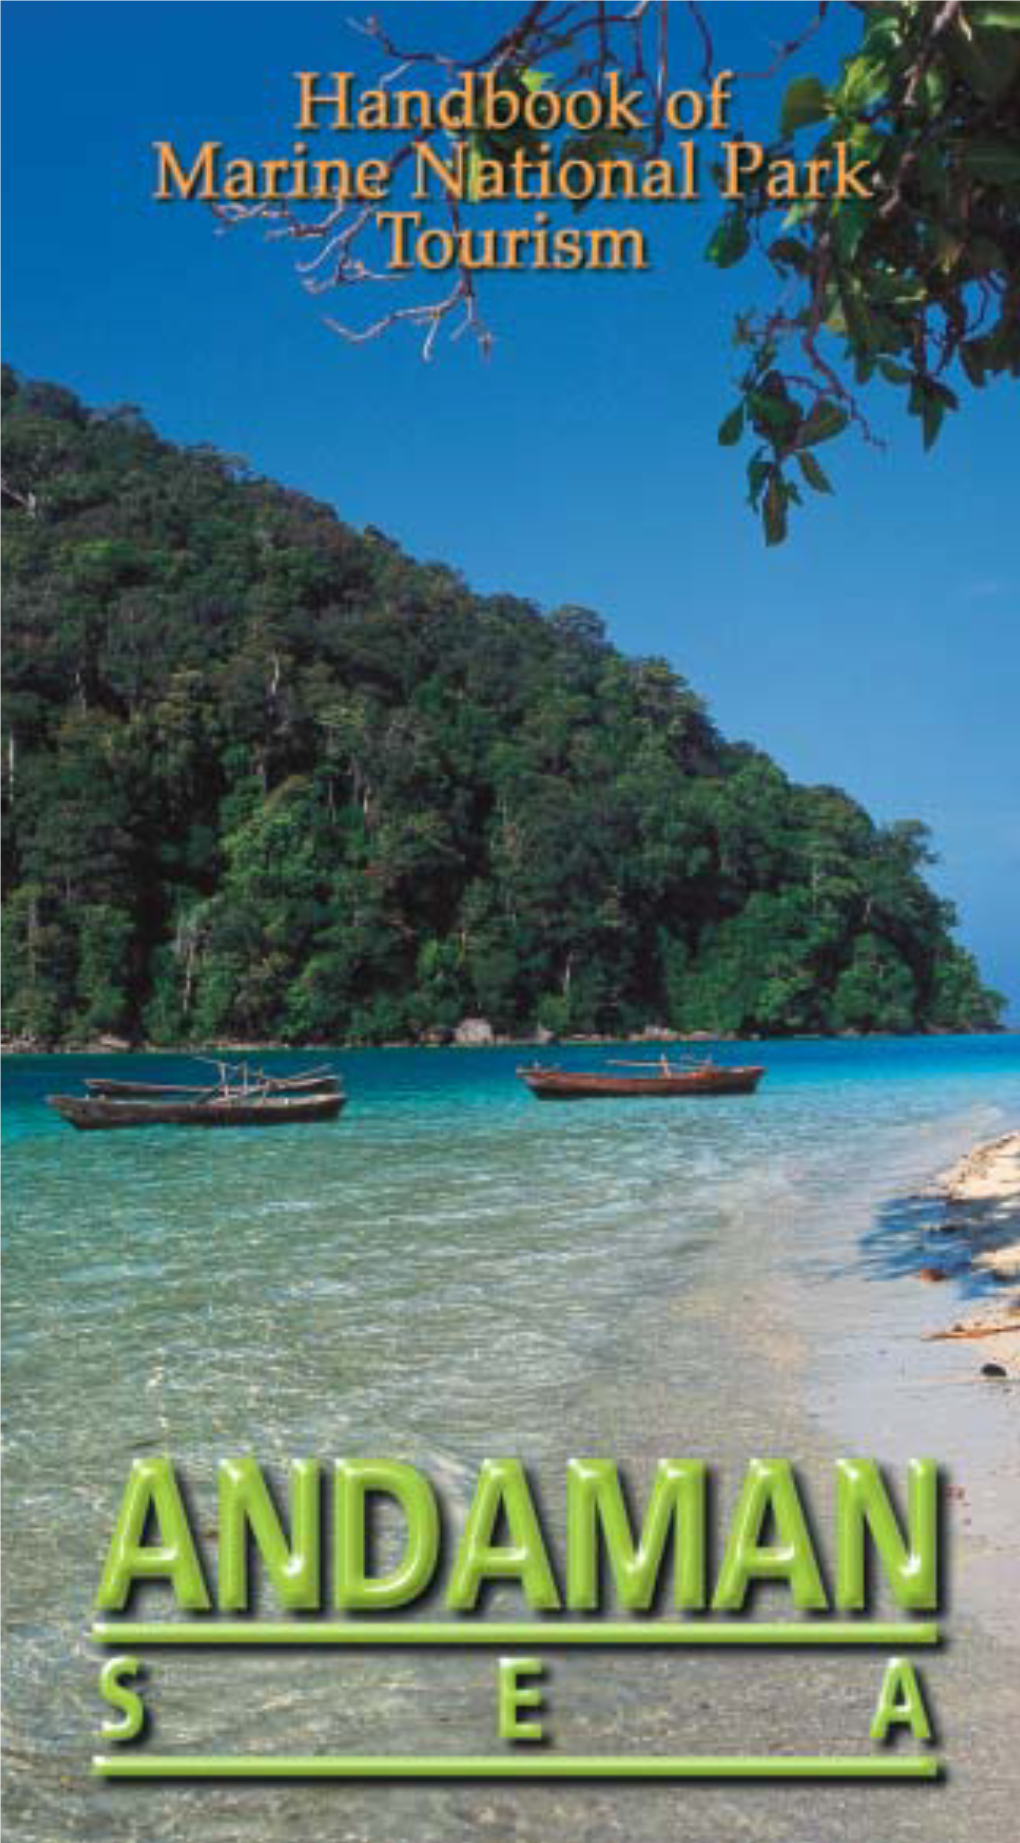 Handbook of Marine National Park Tourism, Andaman